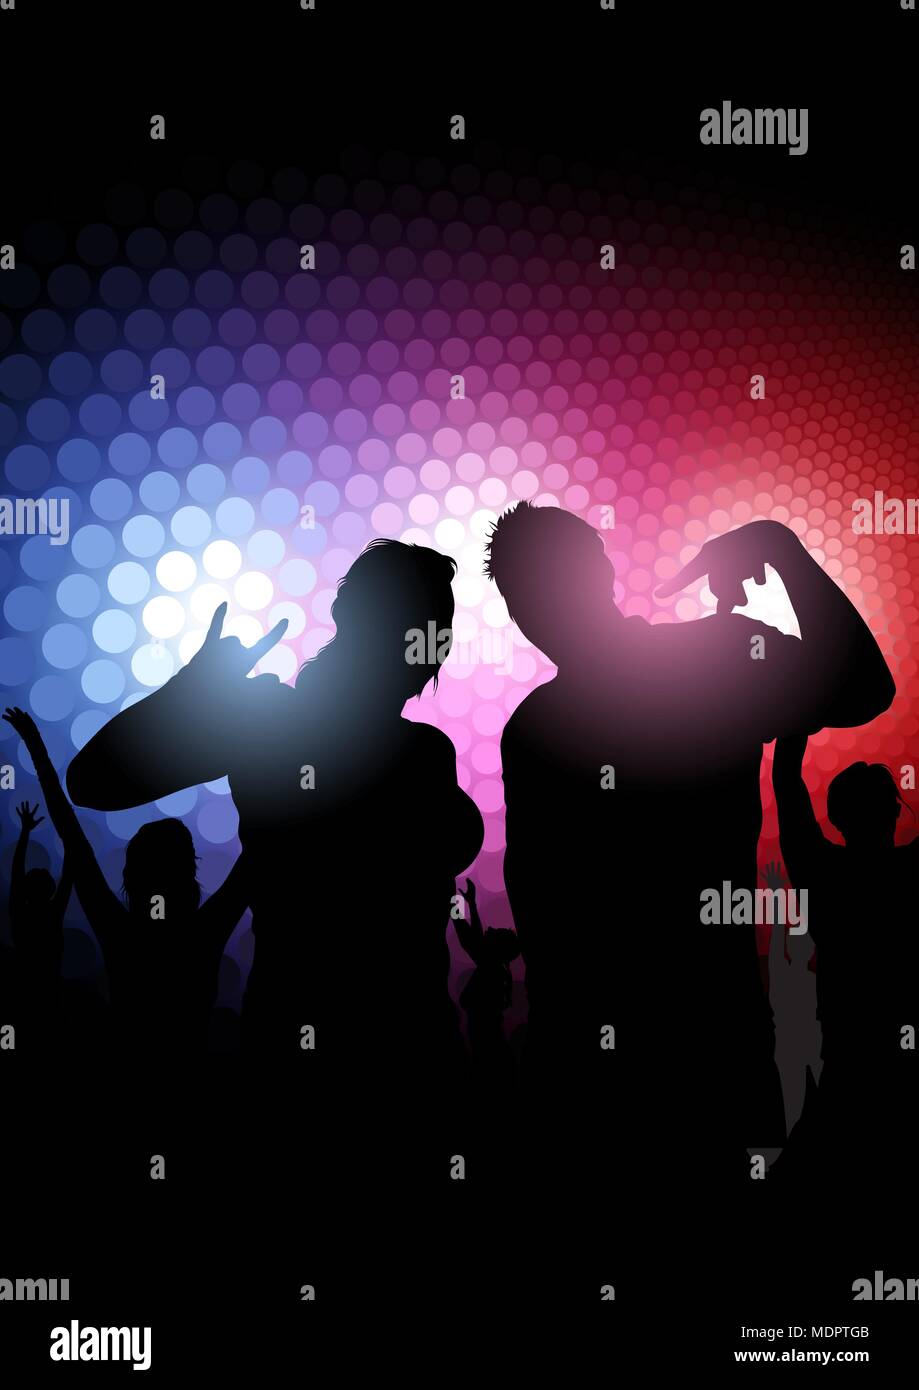 La silhouette du Party People plus de lumières colorées Illustration de Vecteur